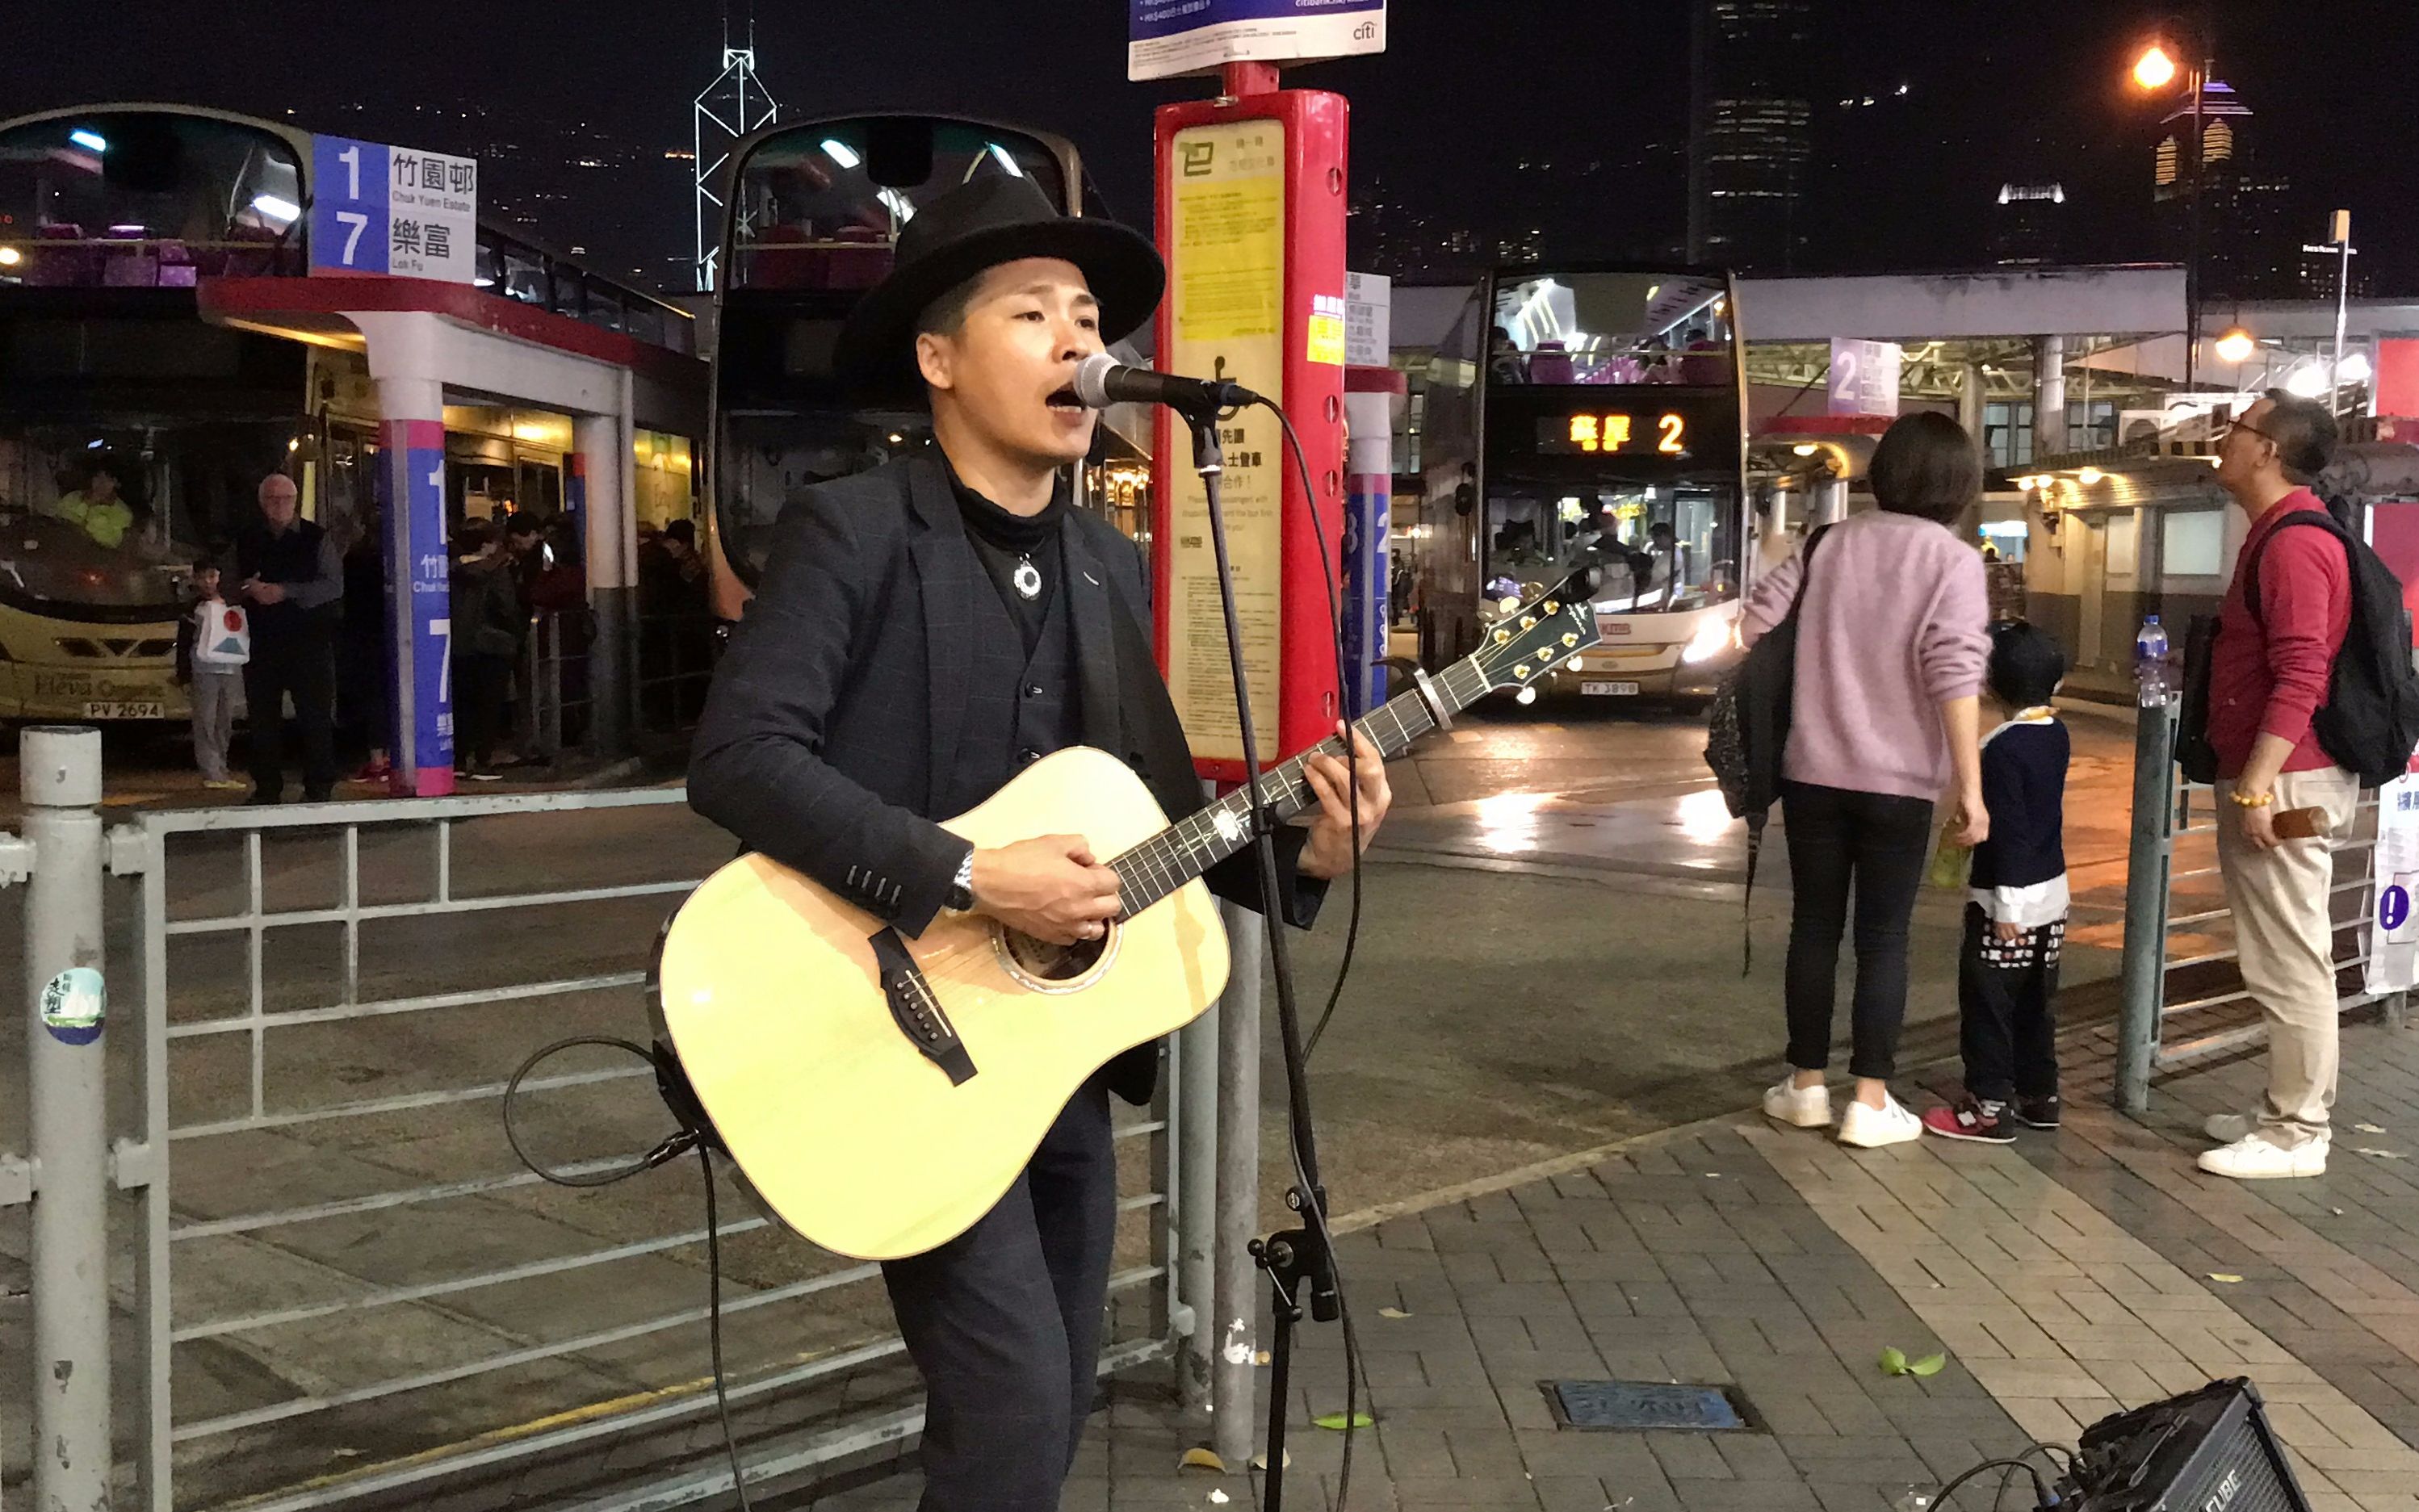 在香港街头再次听到熟悉的《真的爱你》瞬间引起了现场所有人的共鸣